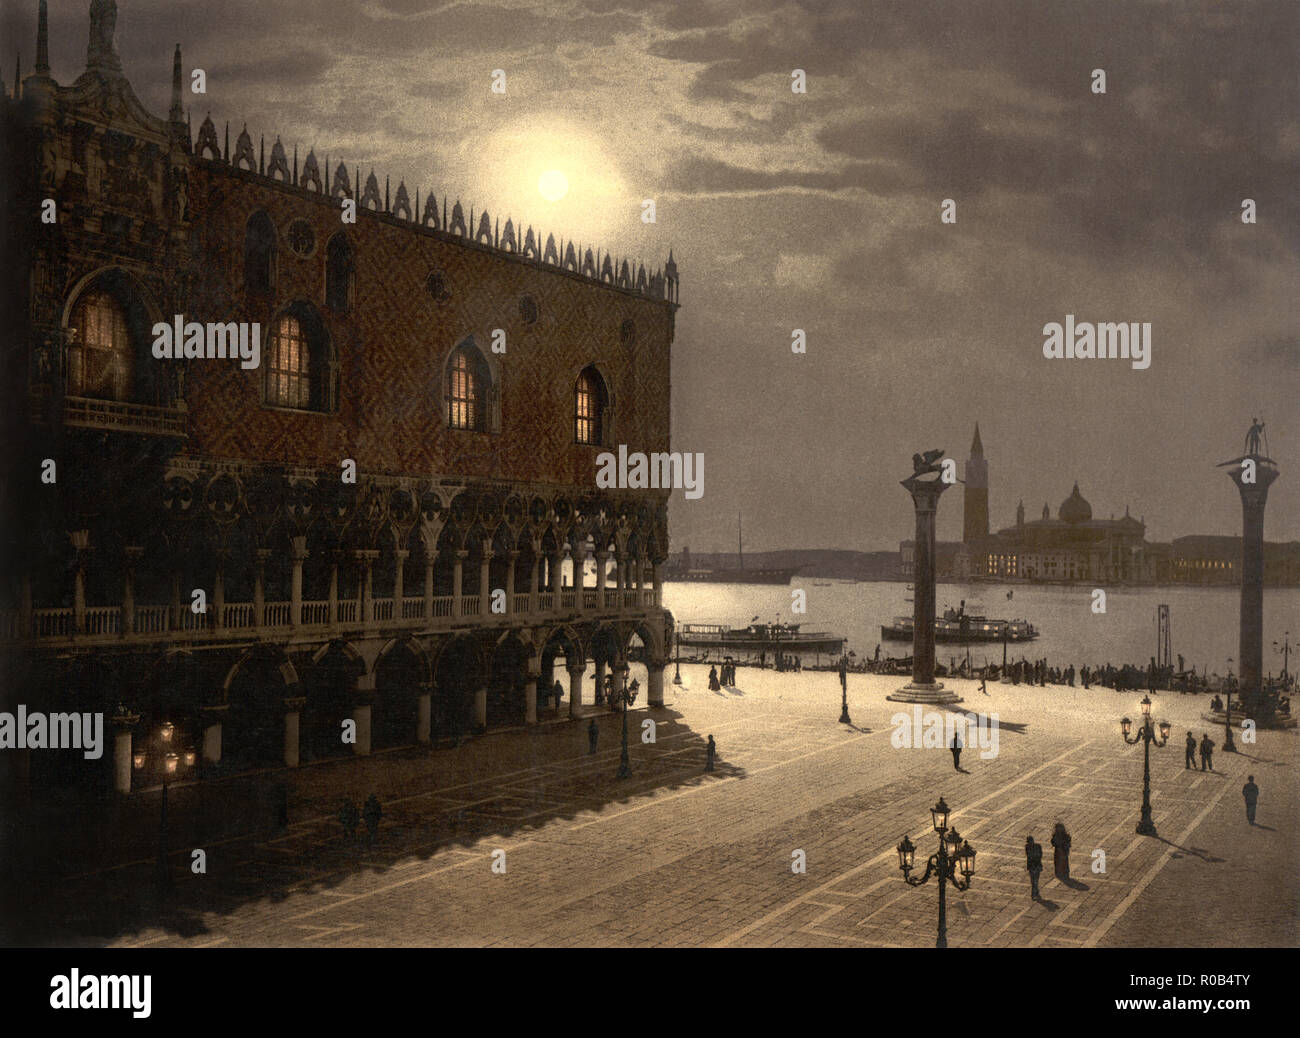 Piazzetta et San Giorgio par Moonlight, Venise, Italie, impression Photochrome, Detroit Publishing Company, 1900 Banque D'Images